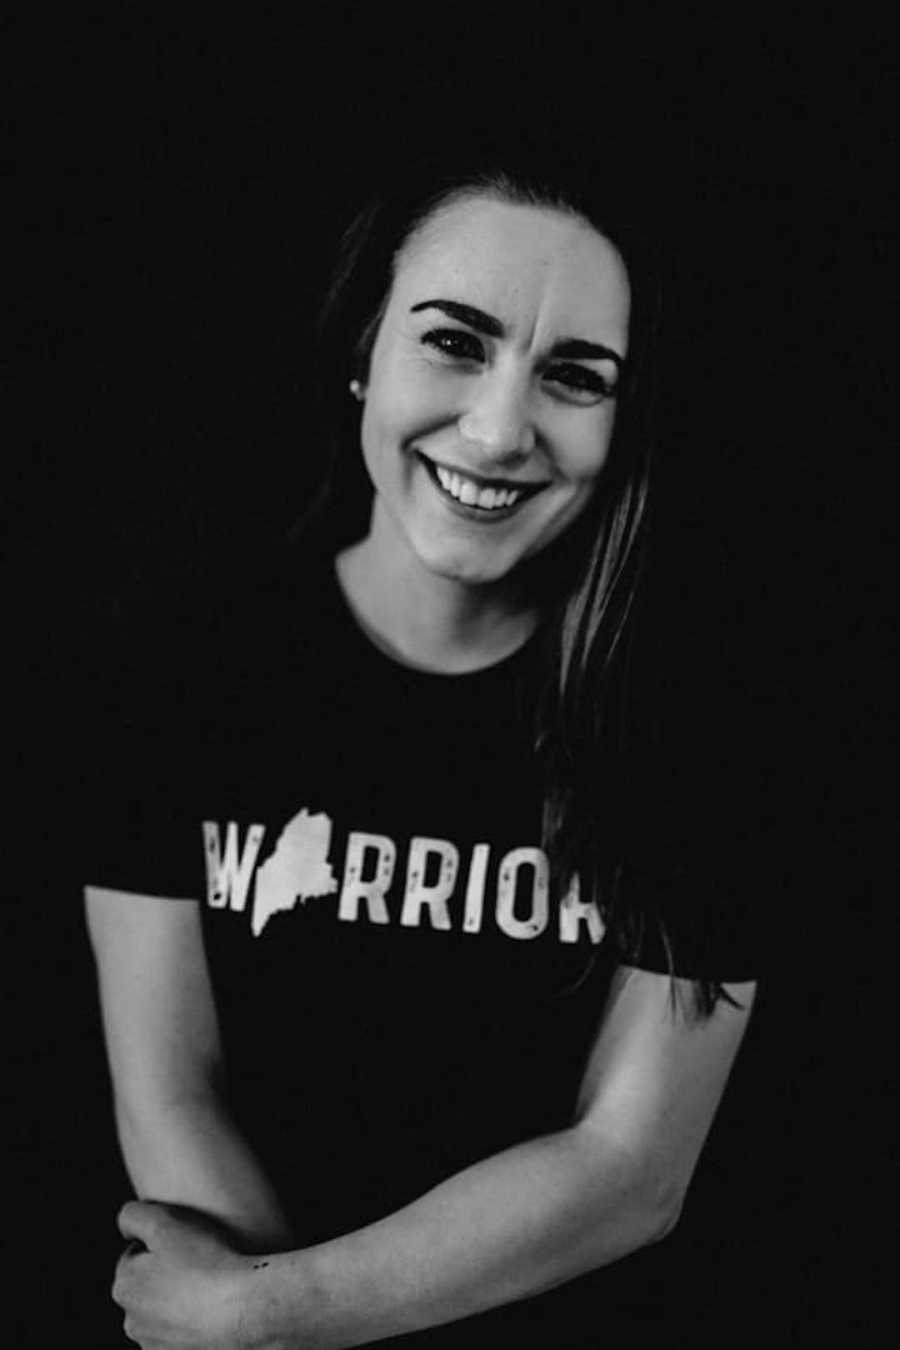 woman wearing a 'warrior' shirt smiling